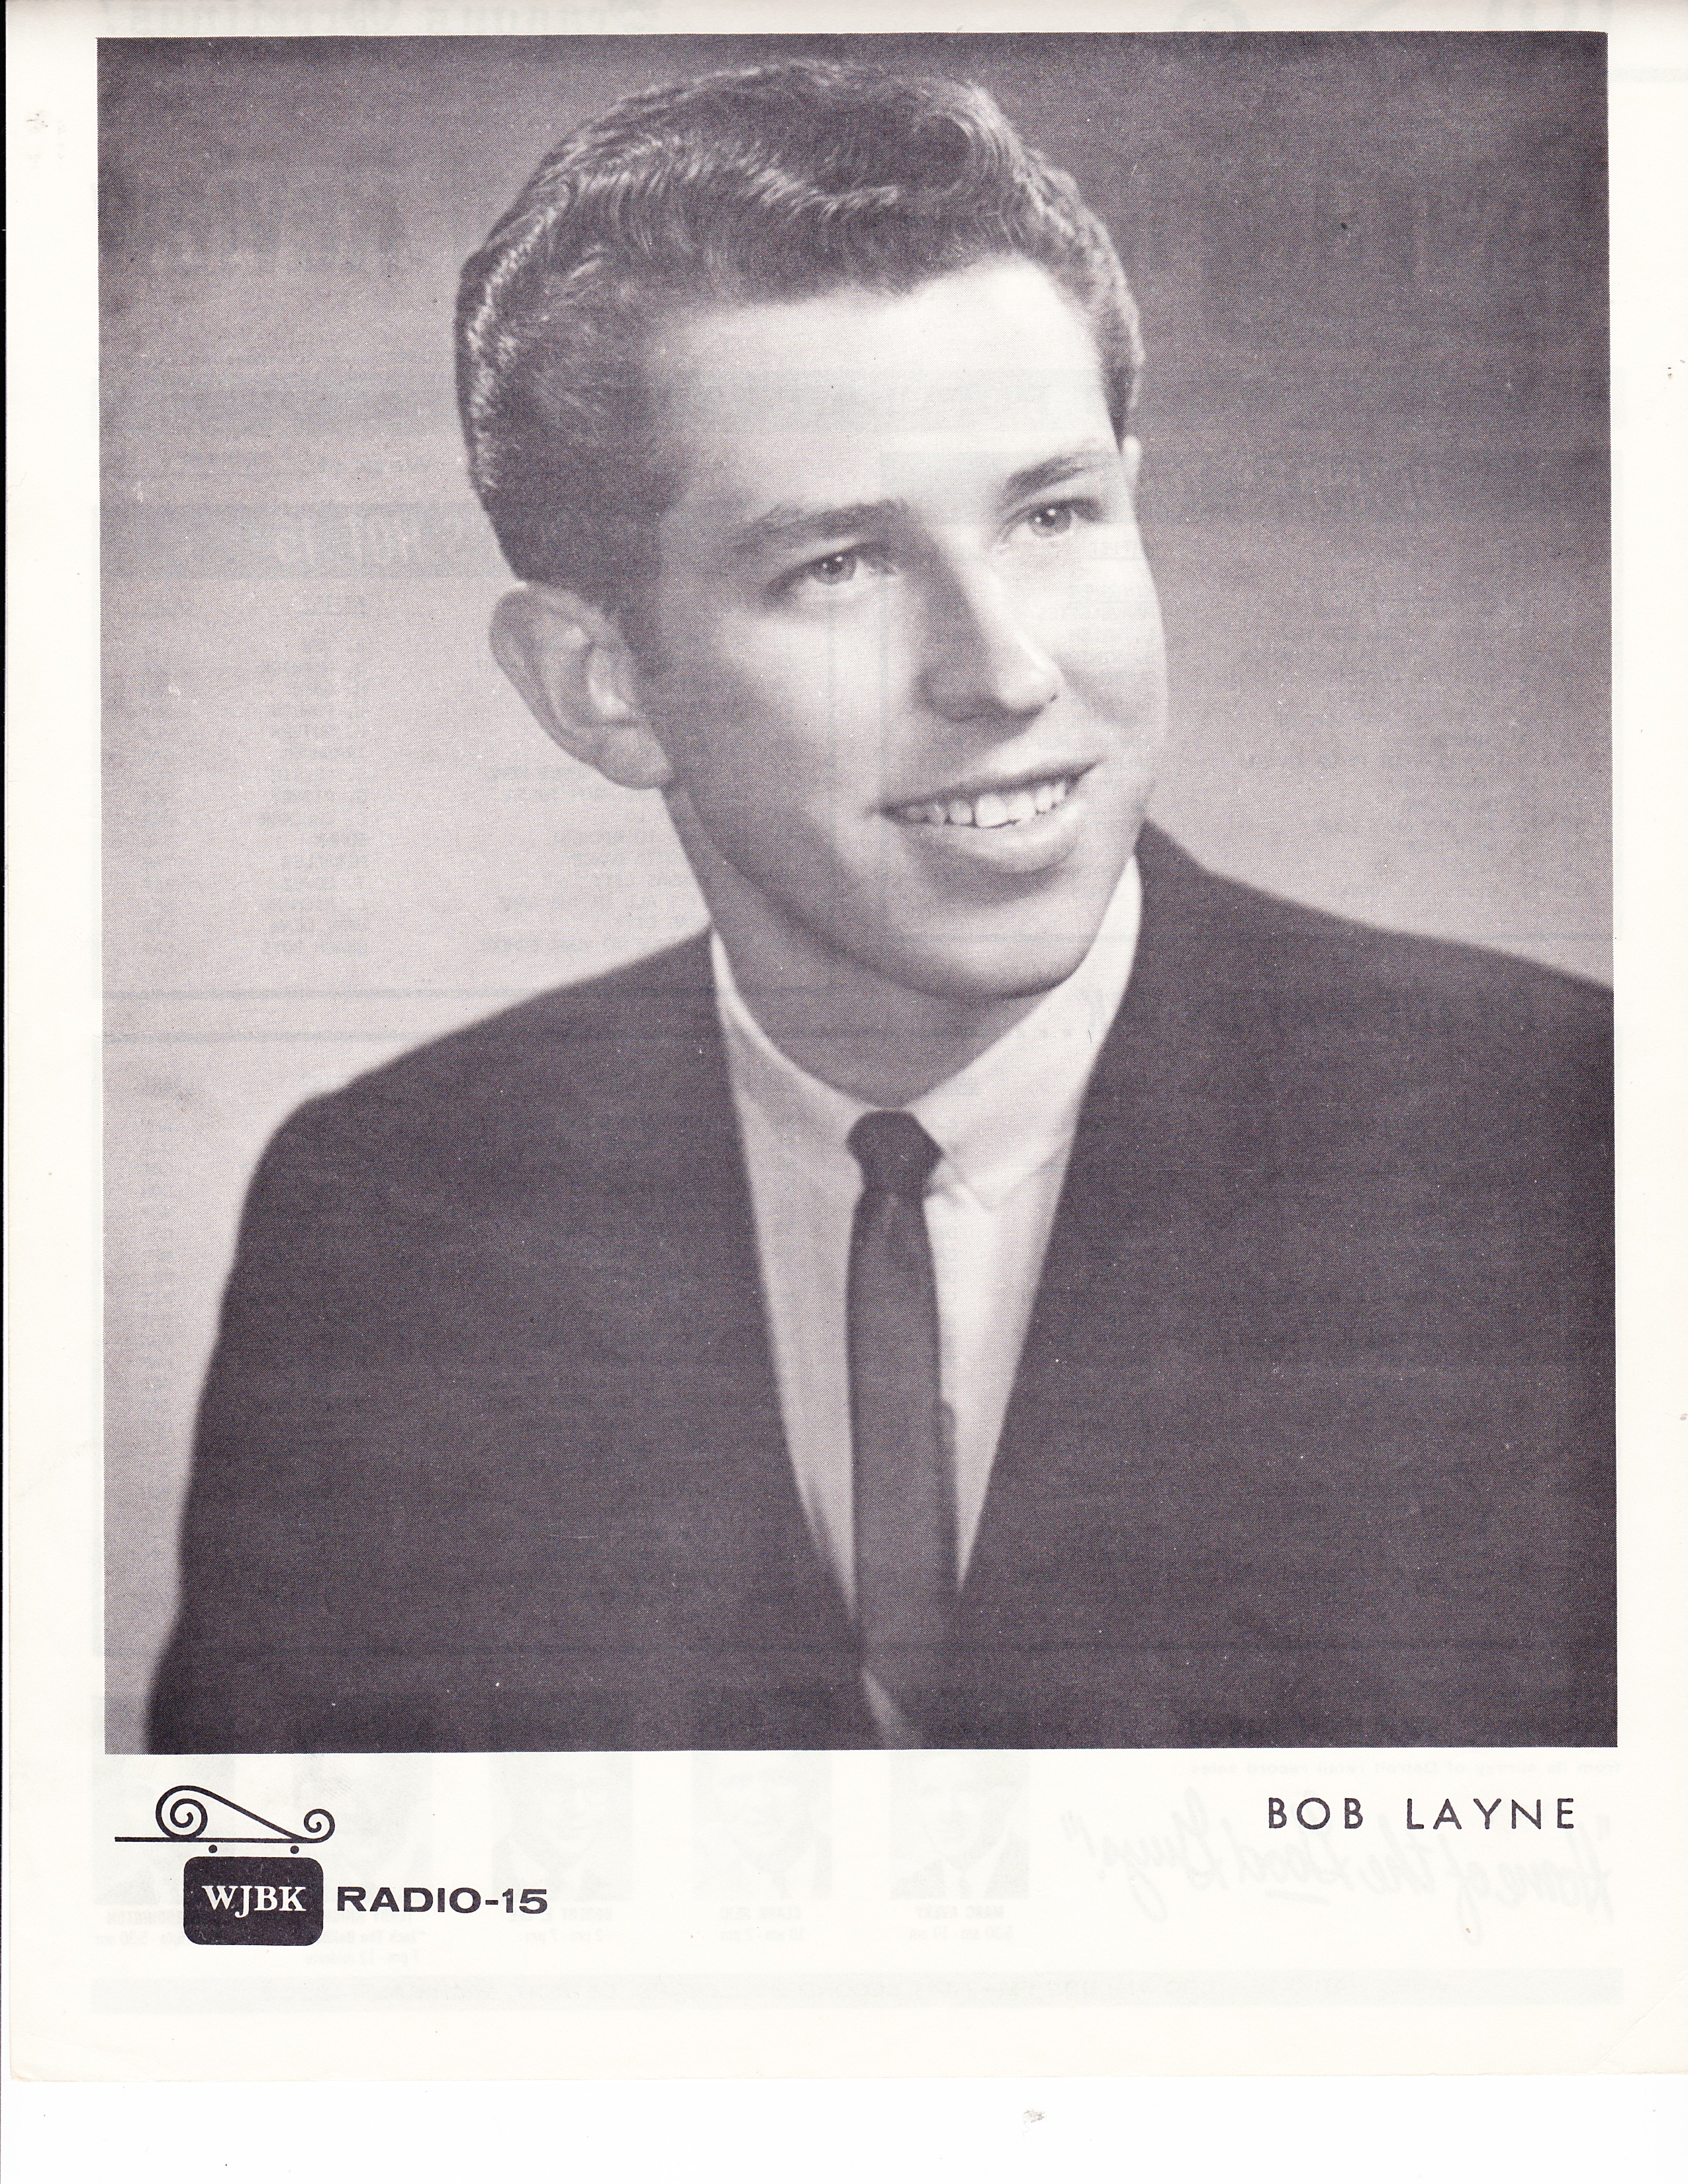 WJBK - BOB LAYNE - DECEMBER 6, 1963 - BACK